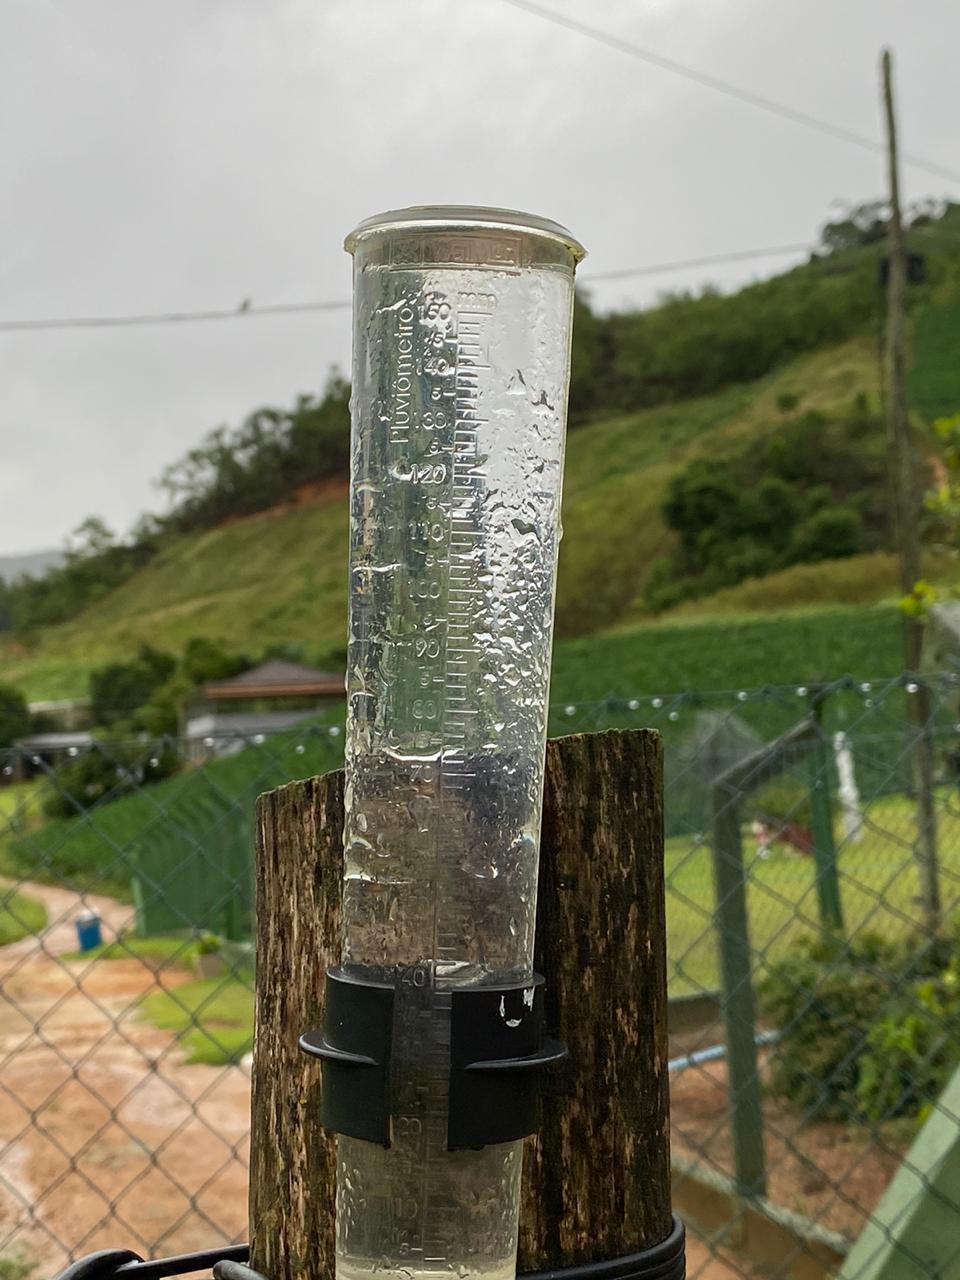 Chuva extrapola limite de pluviômetro - aparelho utilizado para medir a quantidade de água